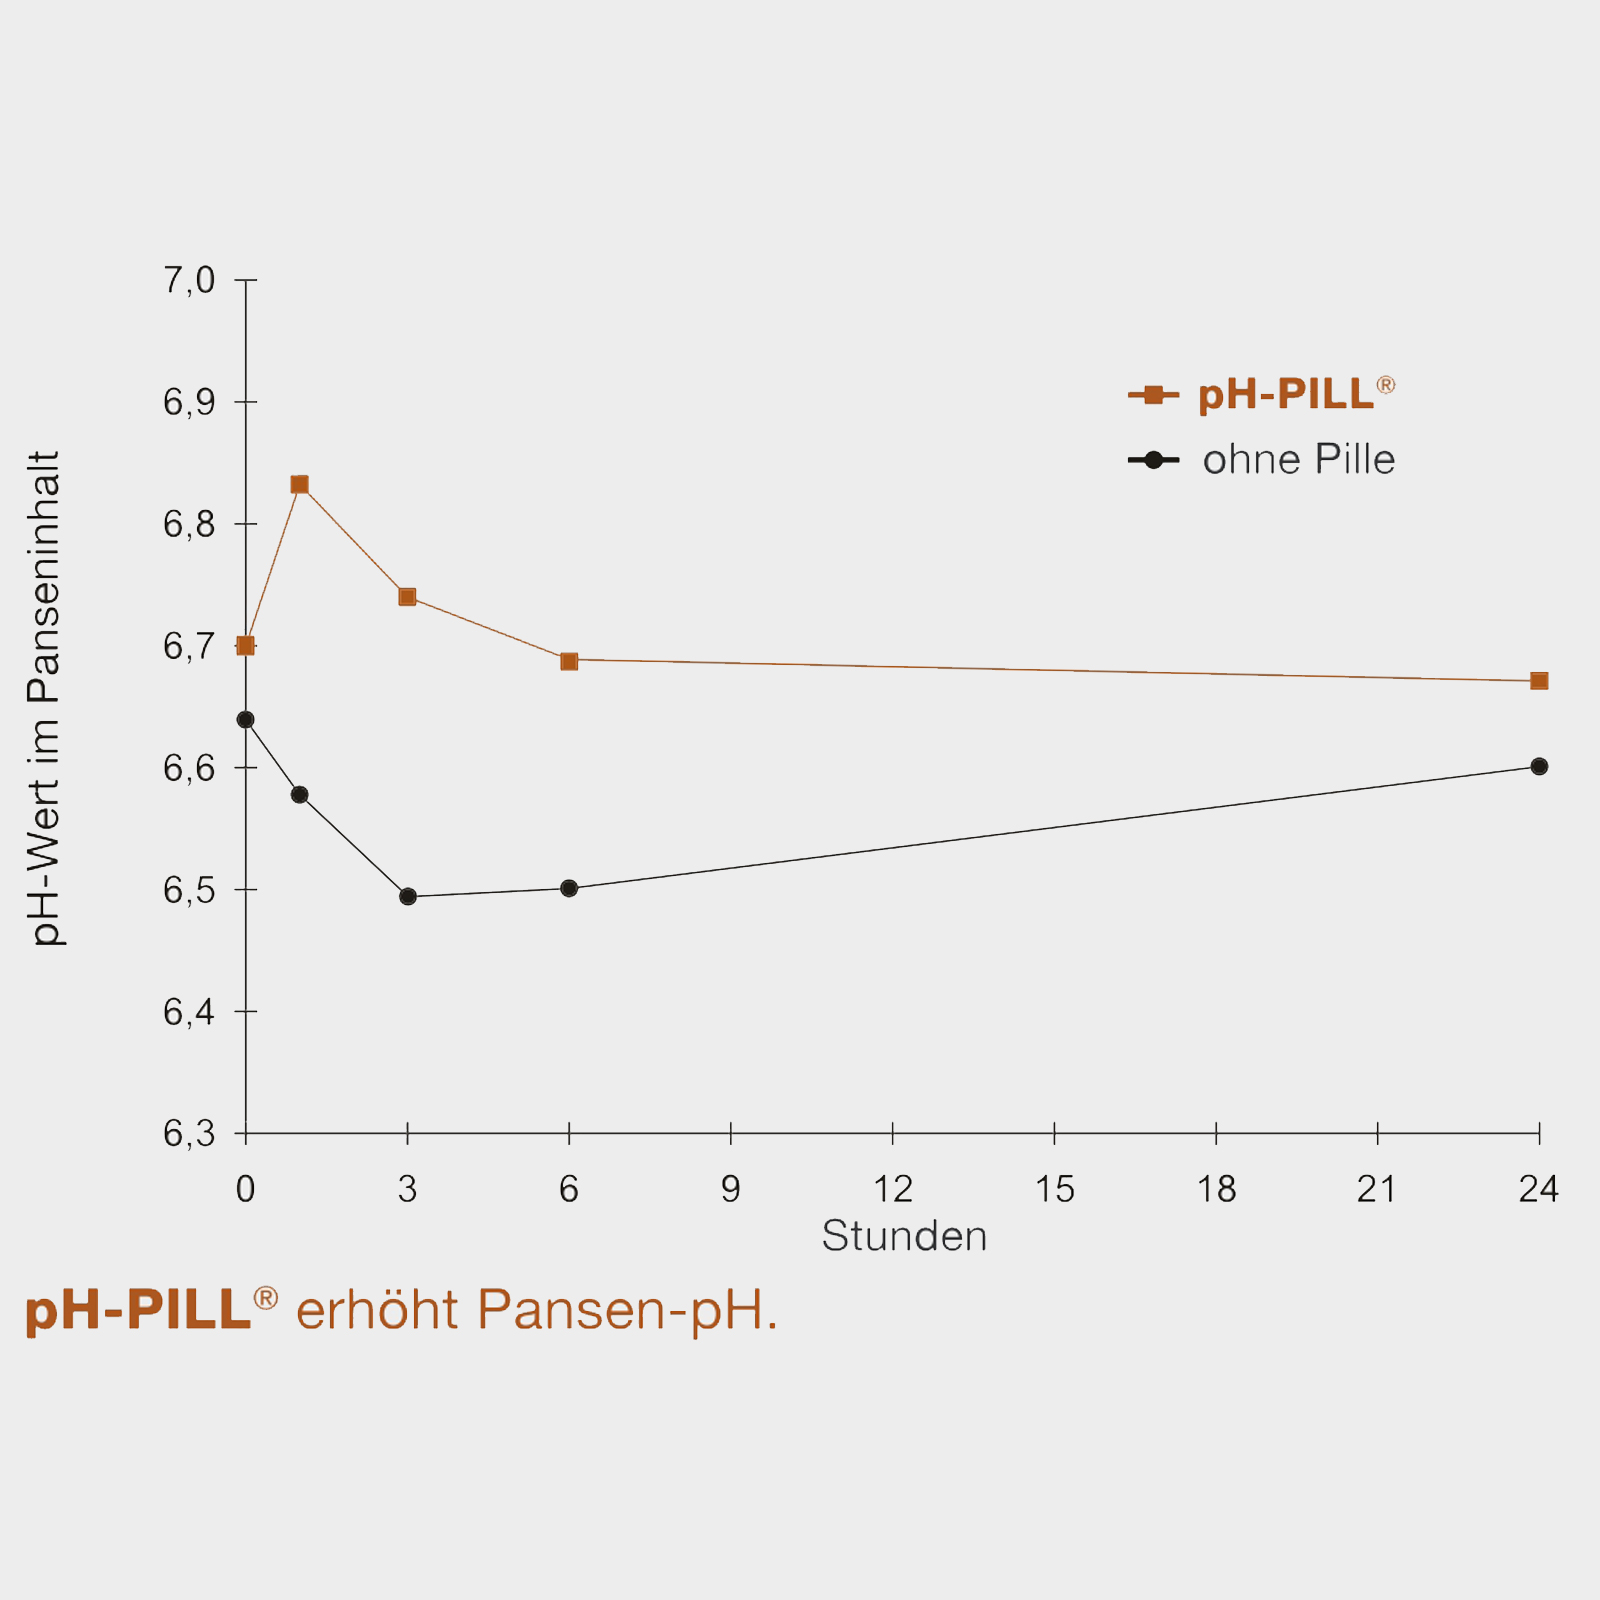 pH-PILL împotriva supraacidificării rumenului 4 x 120 g